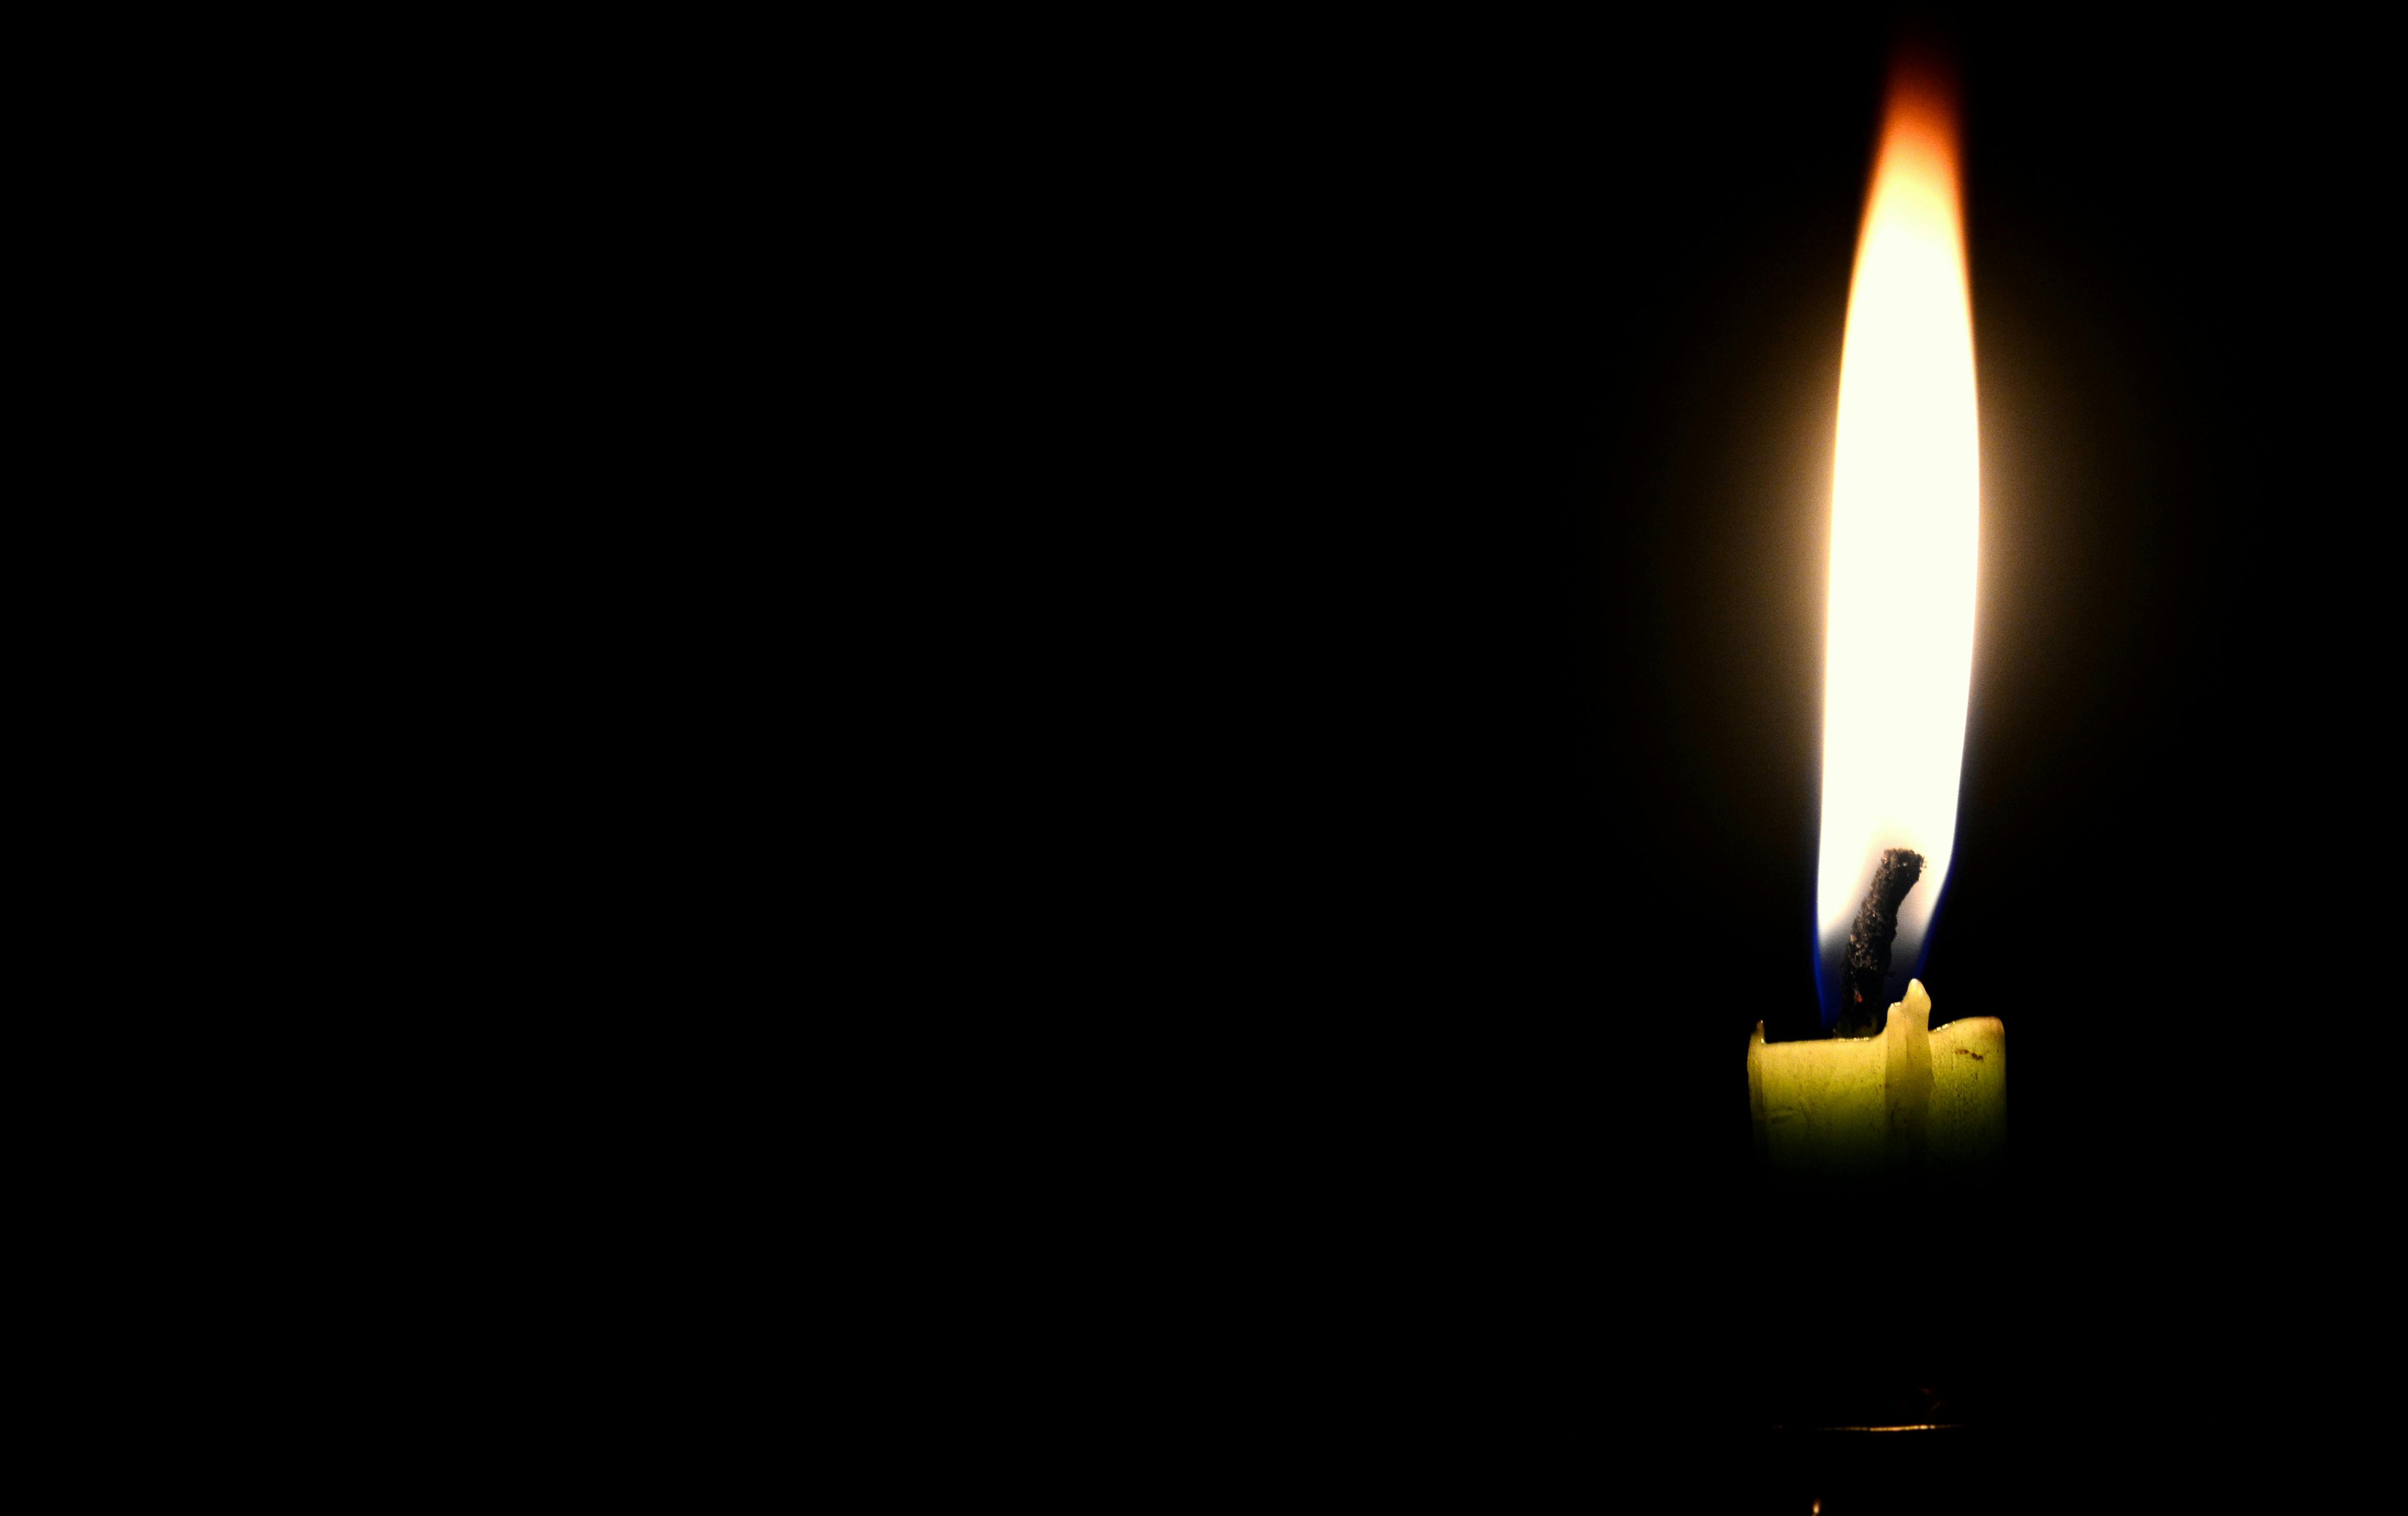 Close-up of Illuminated Candle Against Black Background · Free Stock Photo